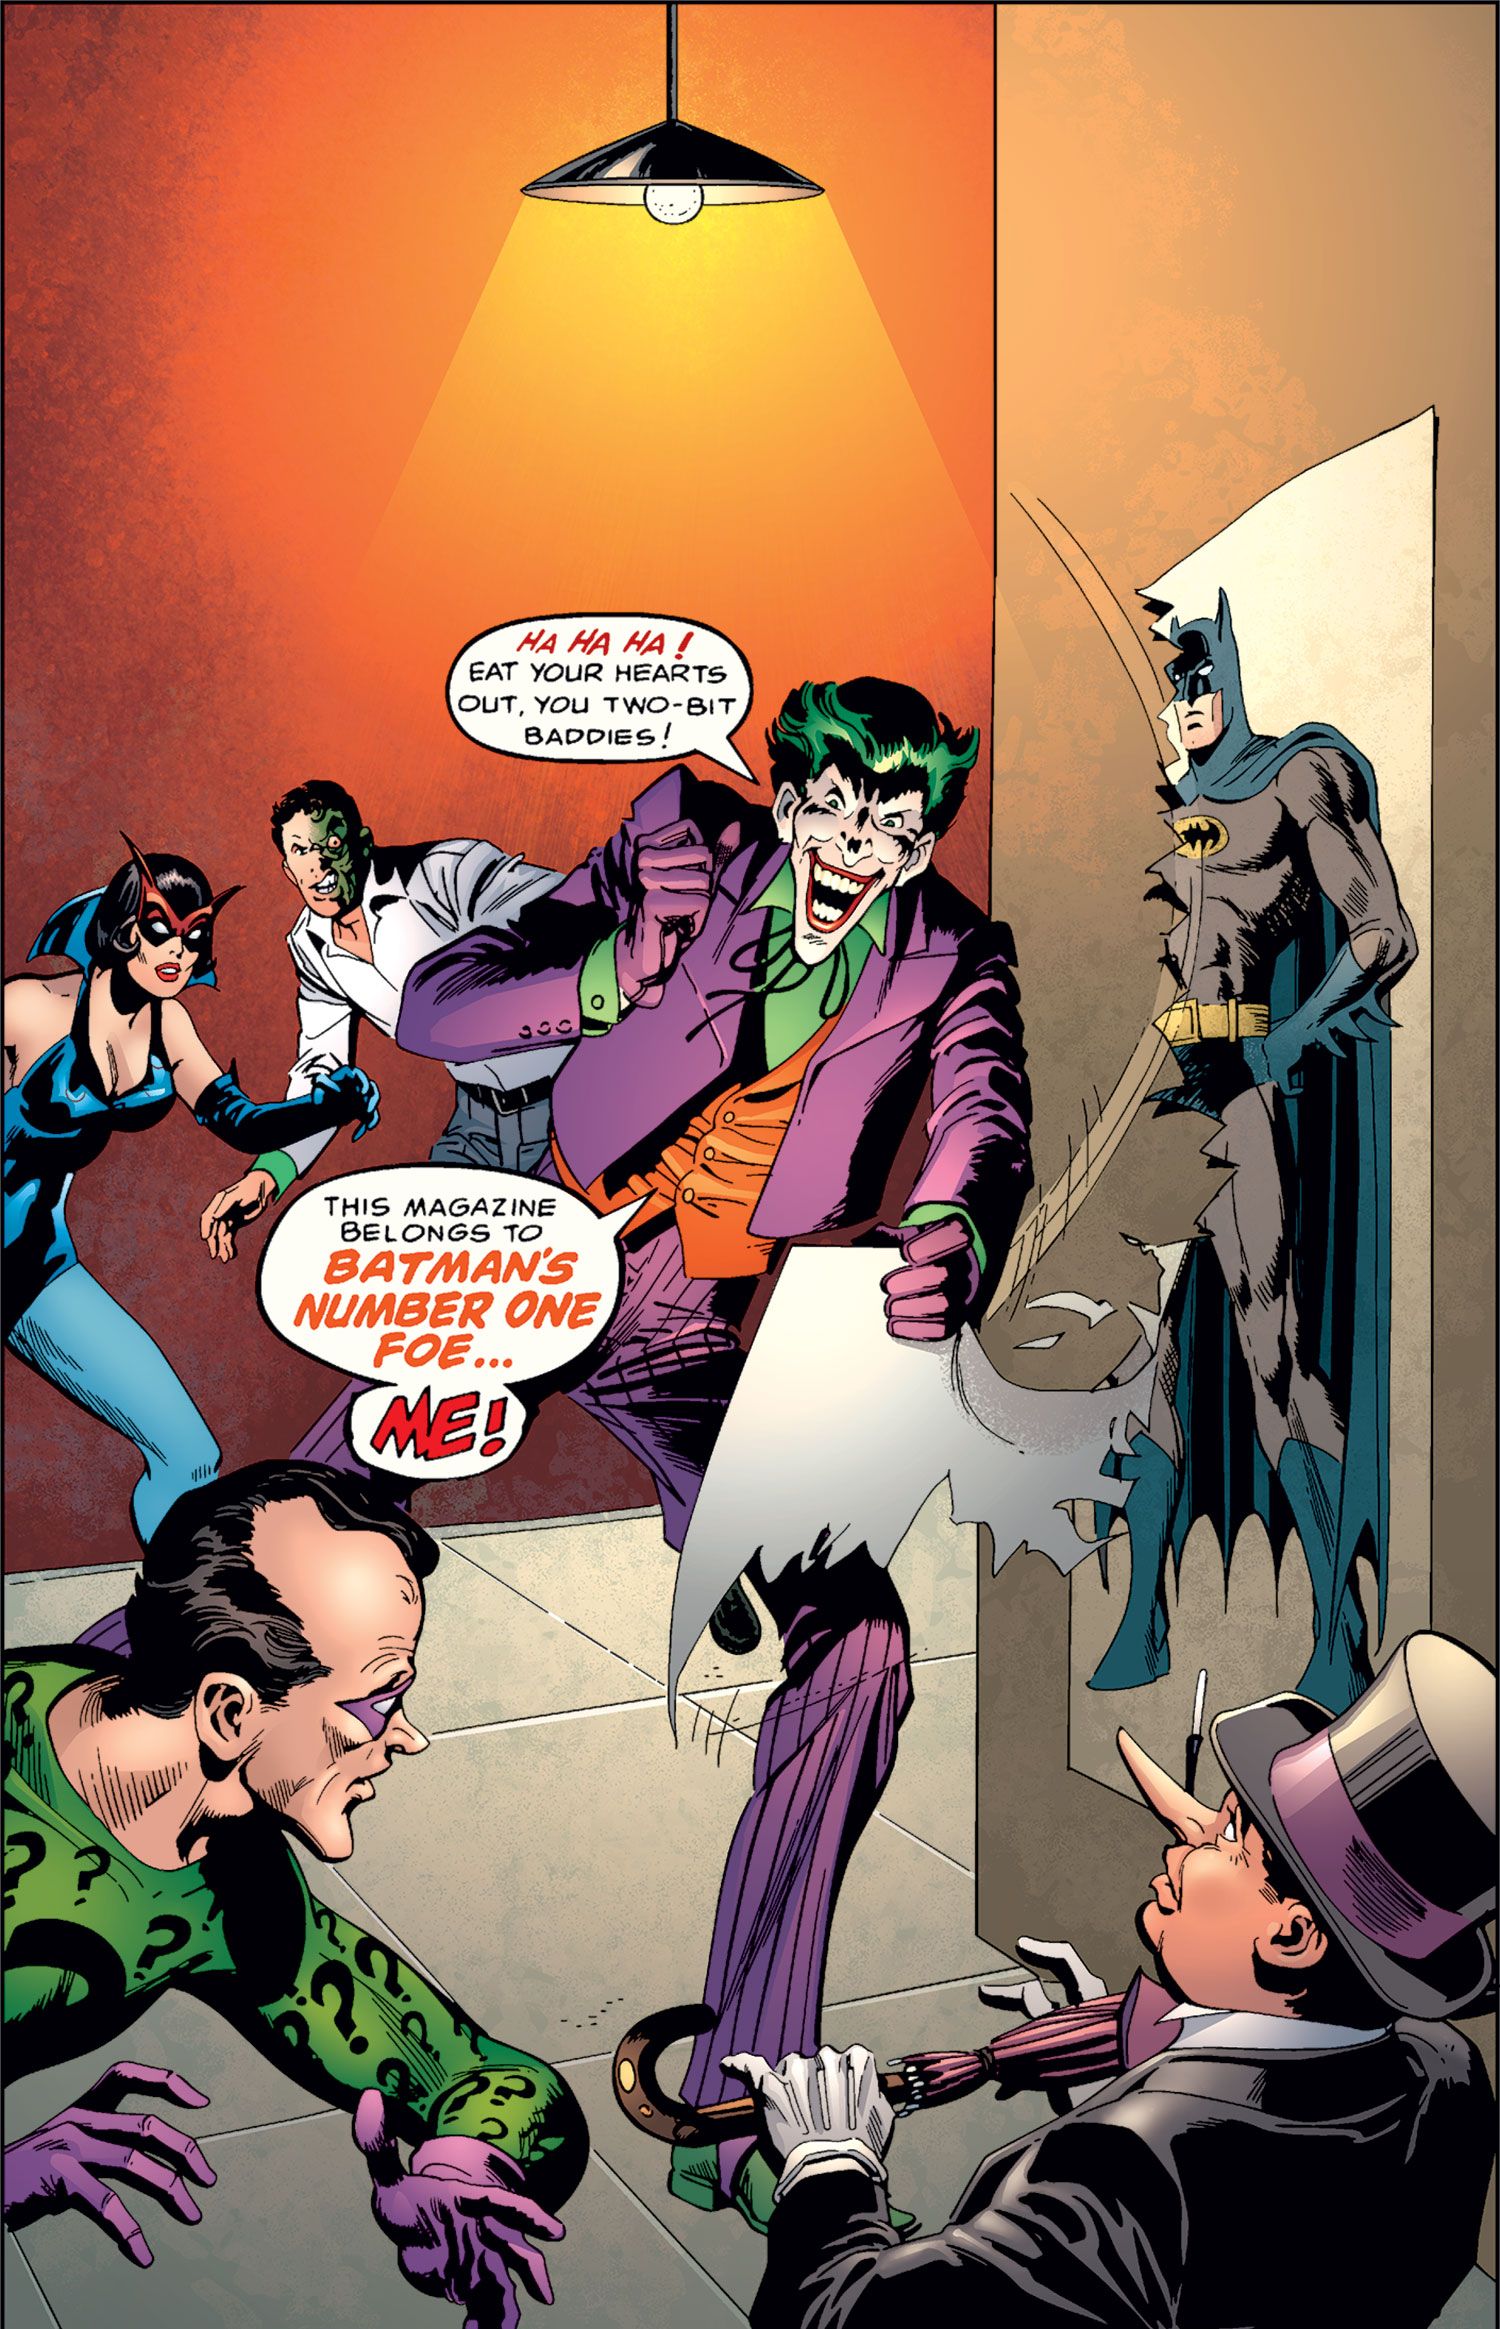 The Joker: Clown Prince of Crime